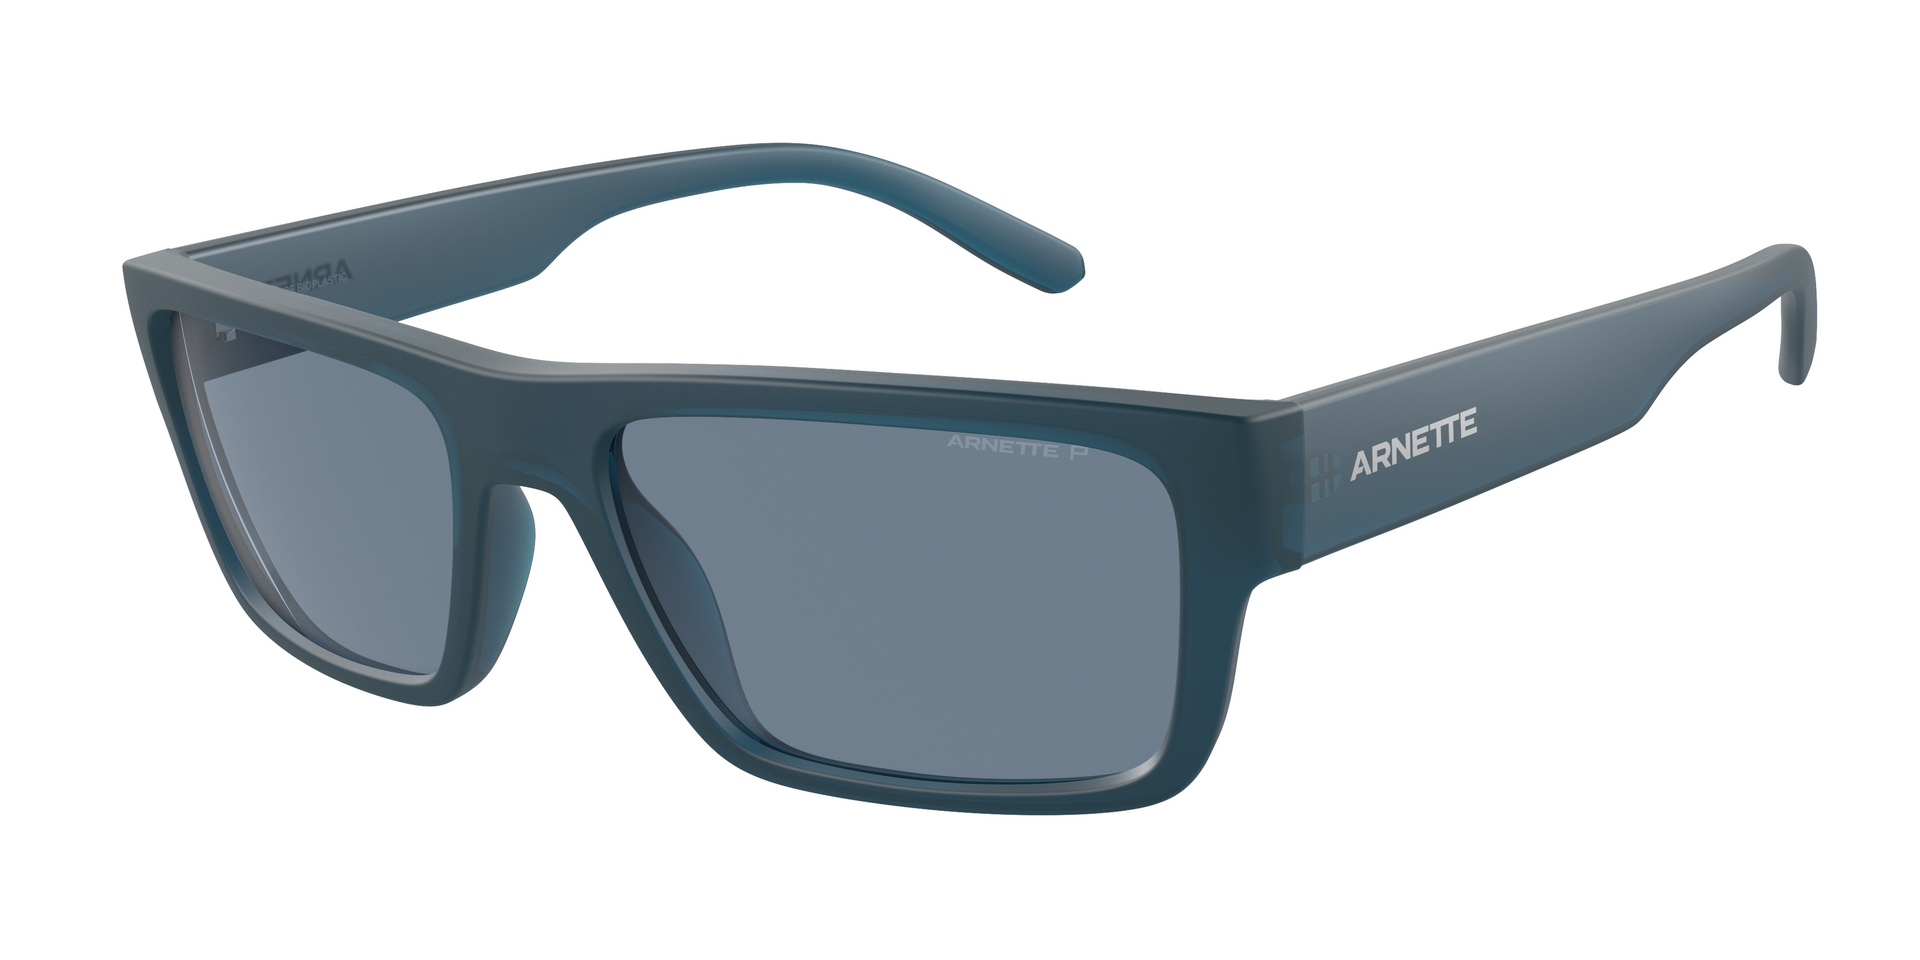 Das Bild zeigt die Sonnenbrille AN4338 29012V von der Marke Arnette in blau.